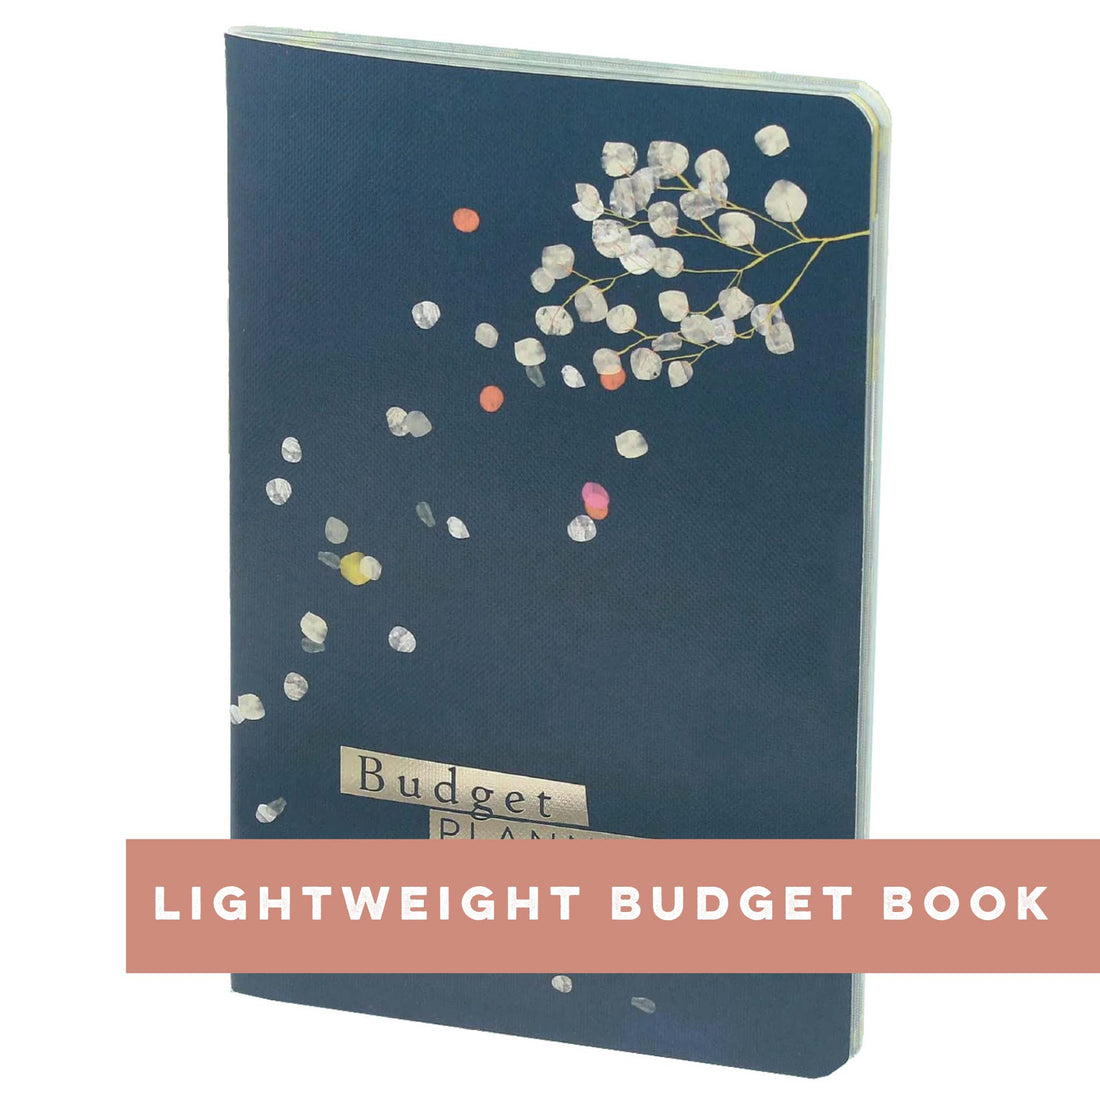 Lightweight Budget Book